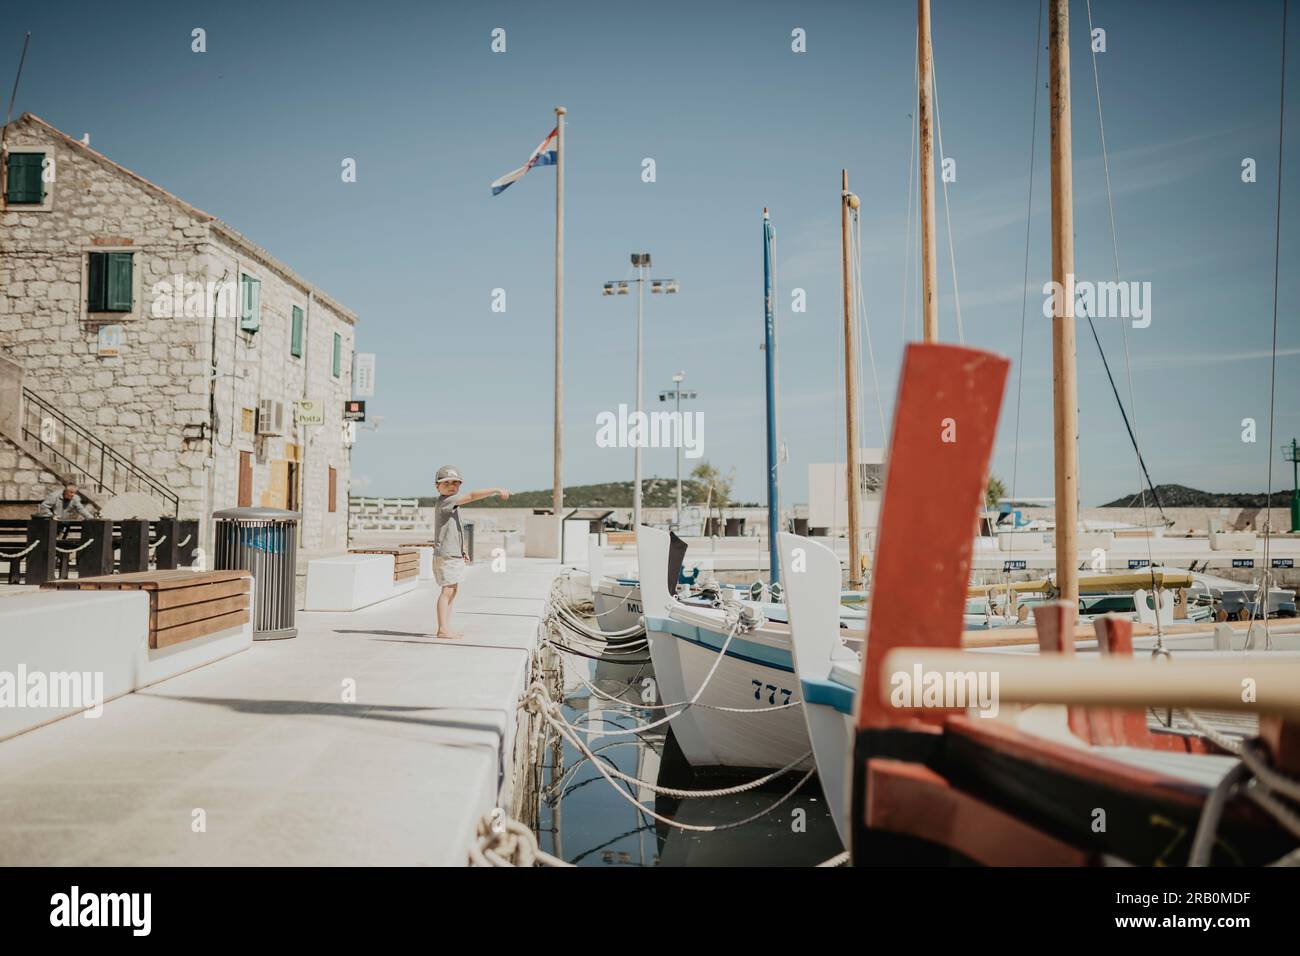 Ragazzo in piedi sul lungomare in un porto, isola di Krk, Croazia Foto Stock